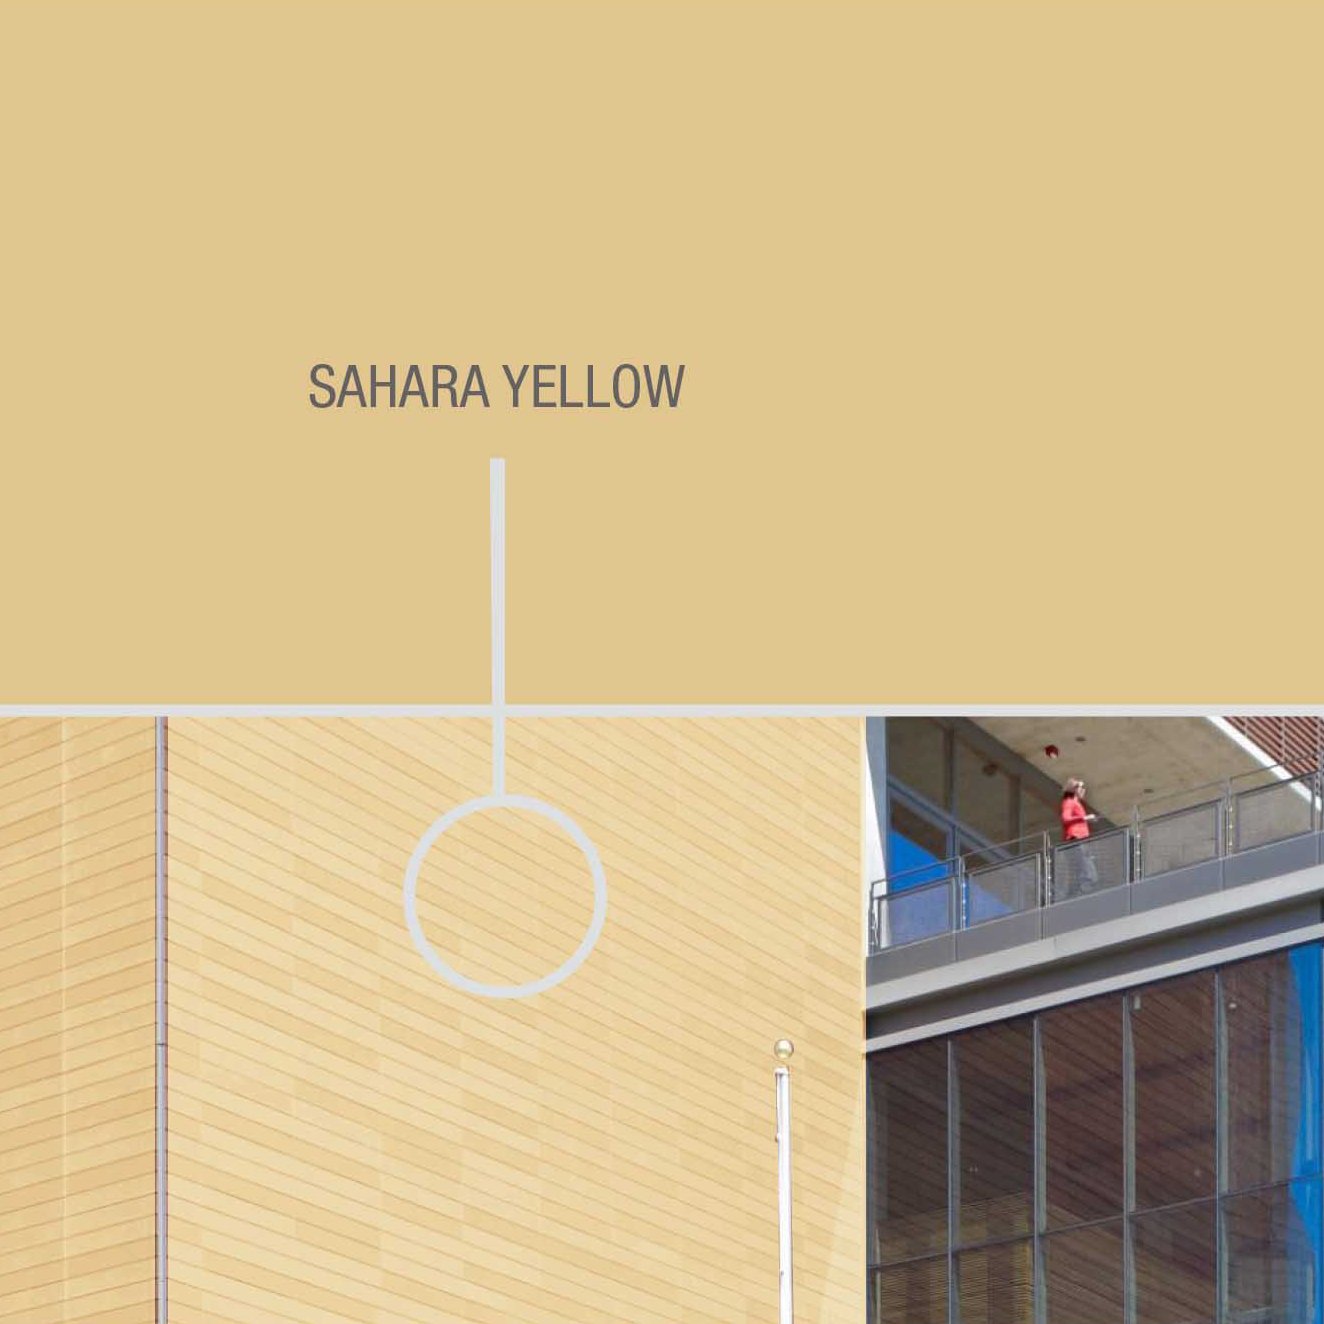 Sahara Yellow